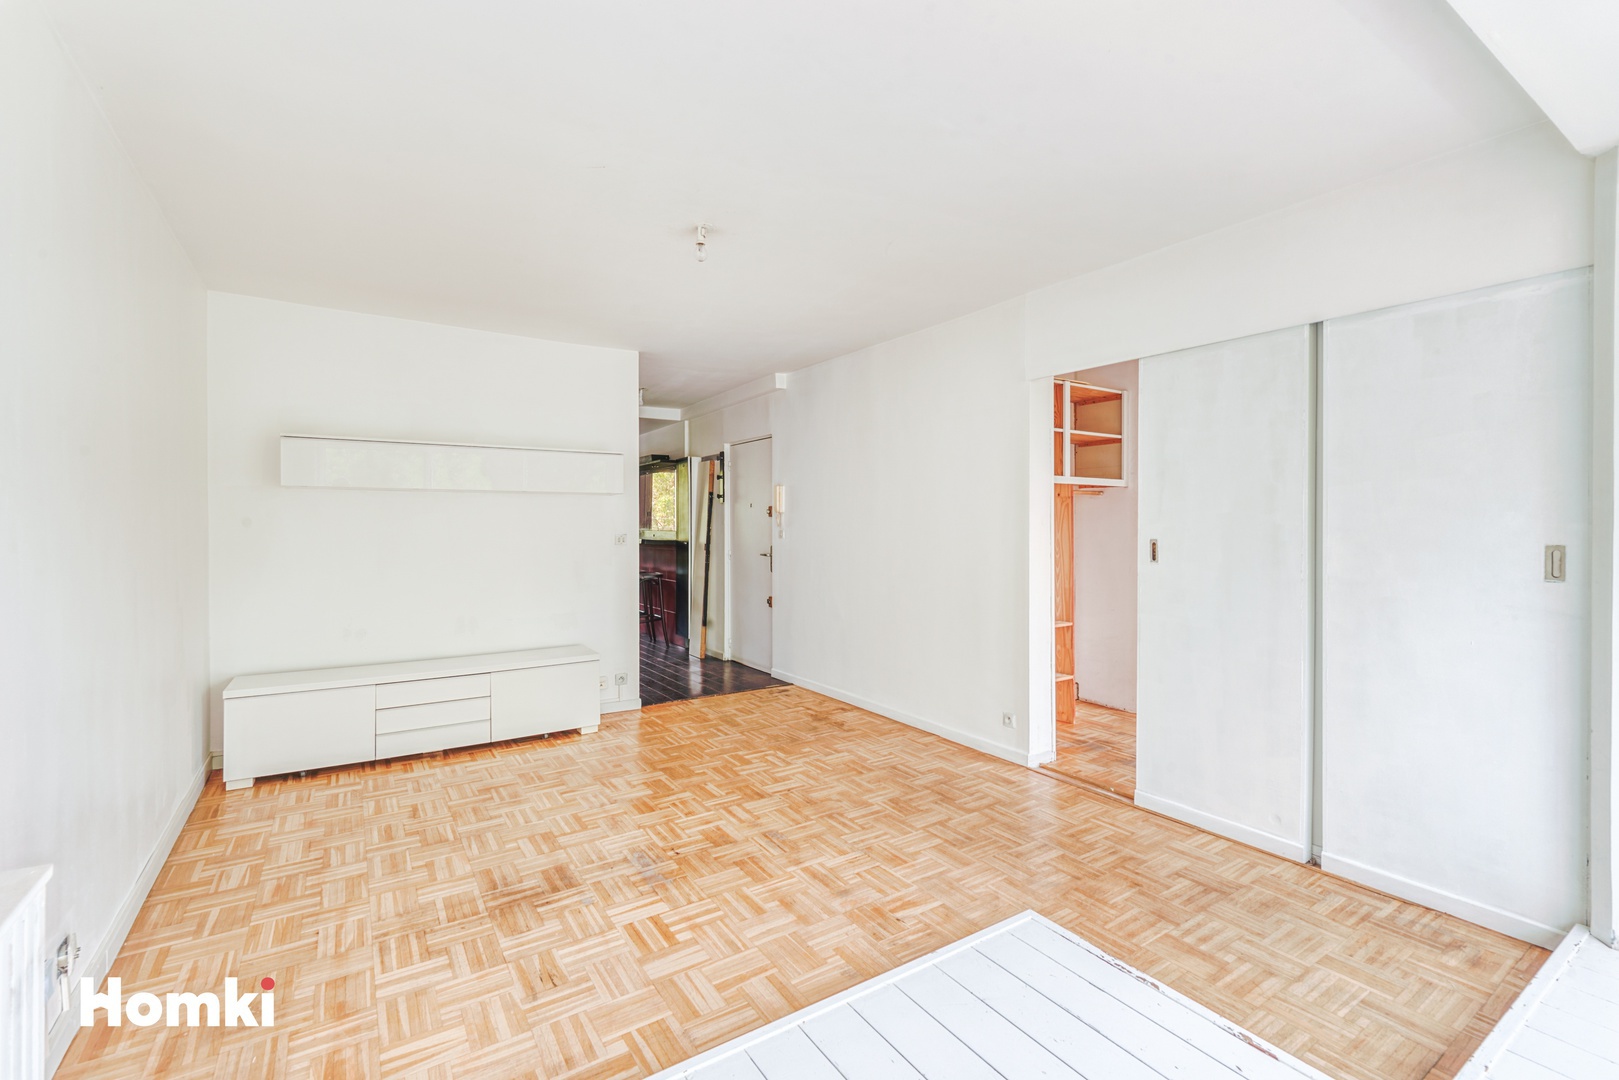 Homki - Vente Appartement  de 54.0 m² à Montpellier 34000